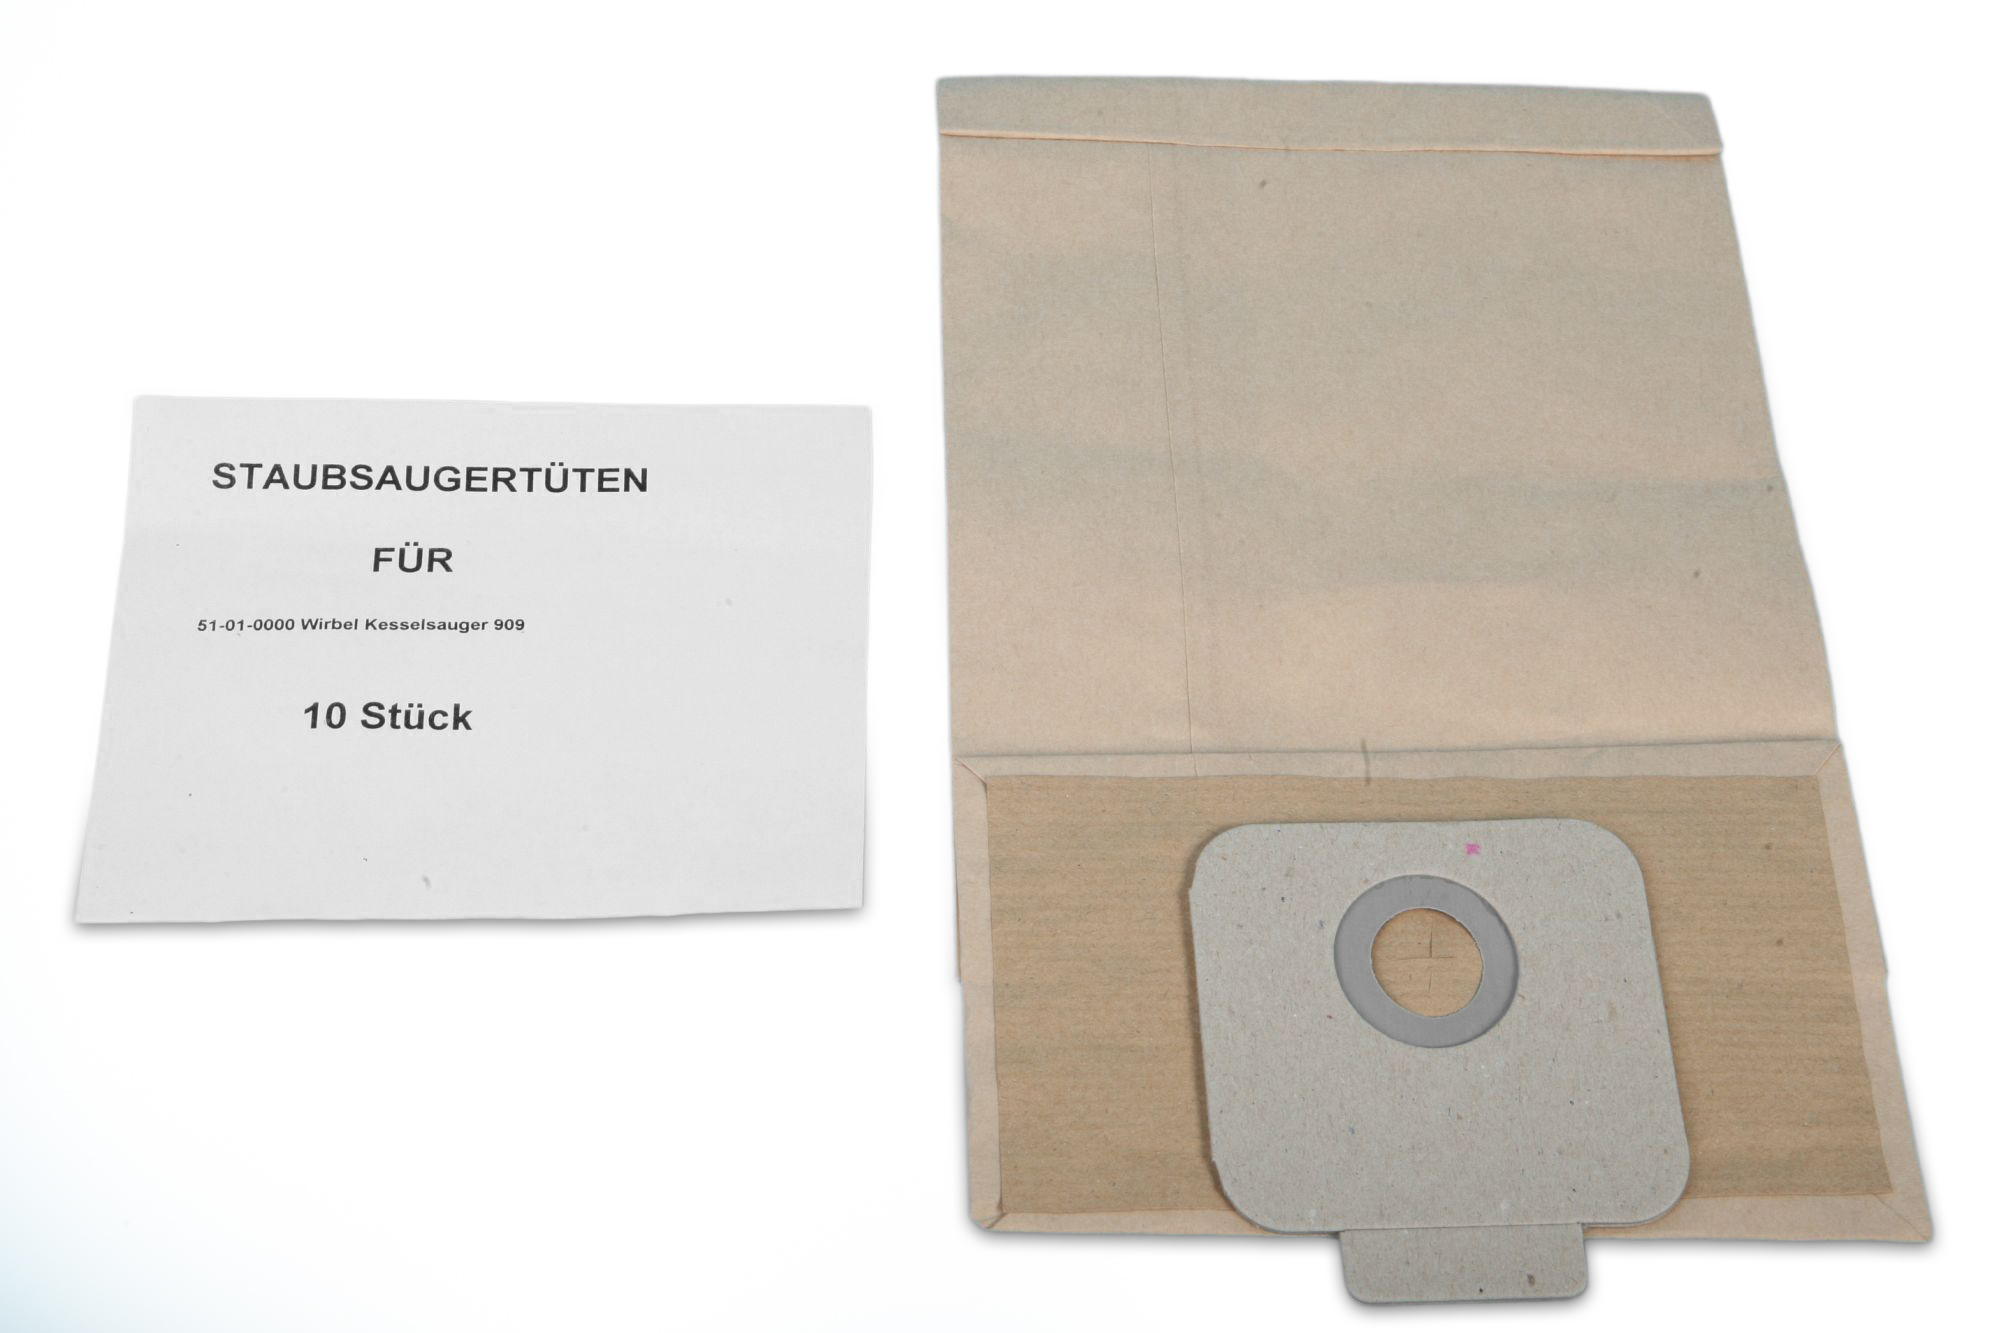 STAUBSAUGERLADEN.DE 10 Staubbeutel passend Staubaugerbeutel für Wirbel 909